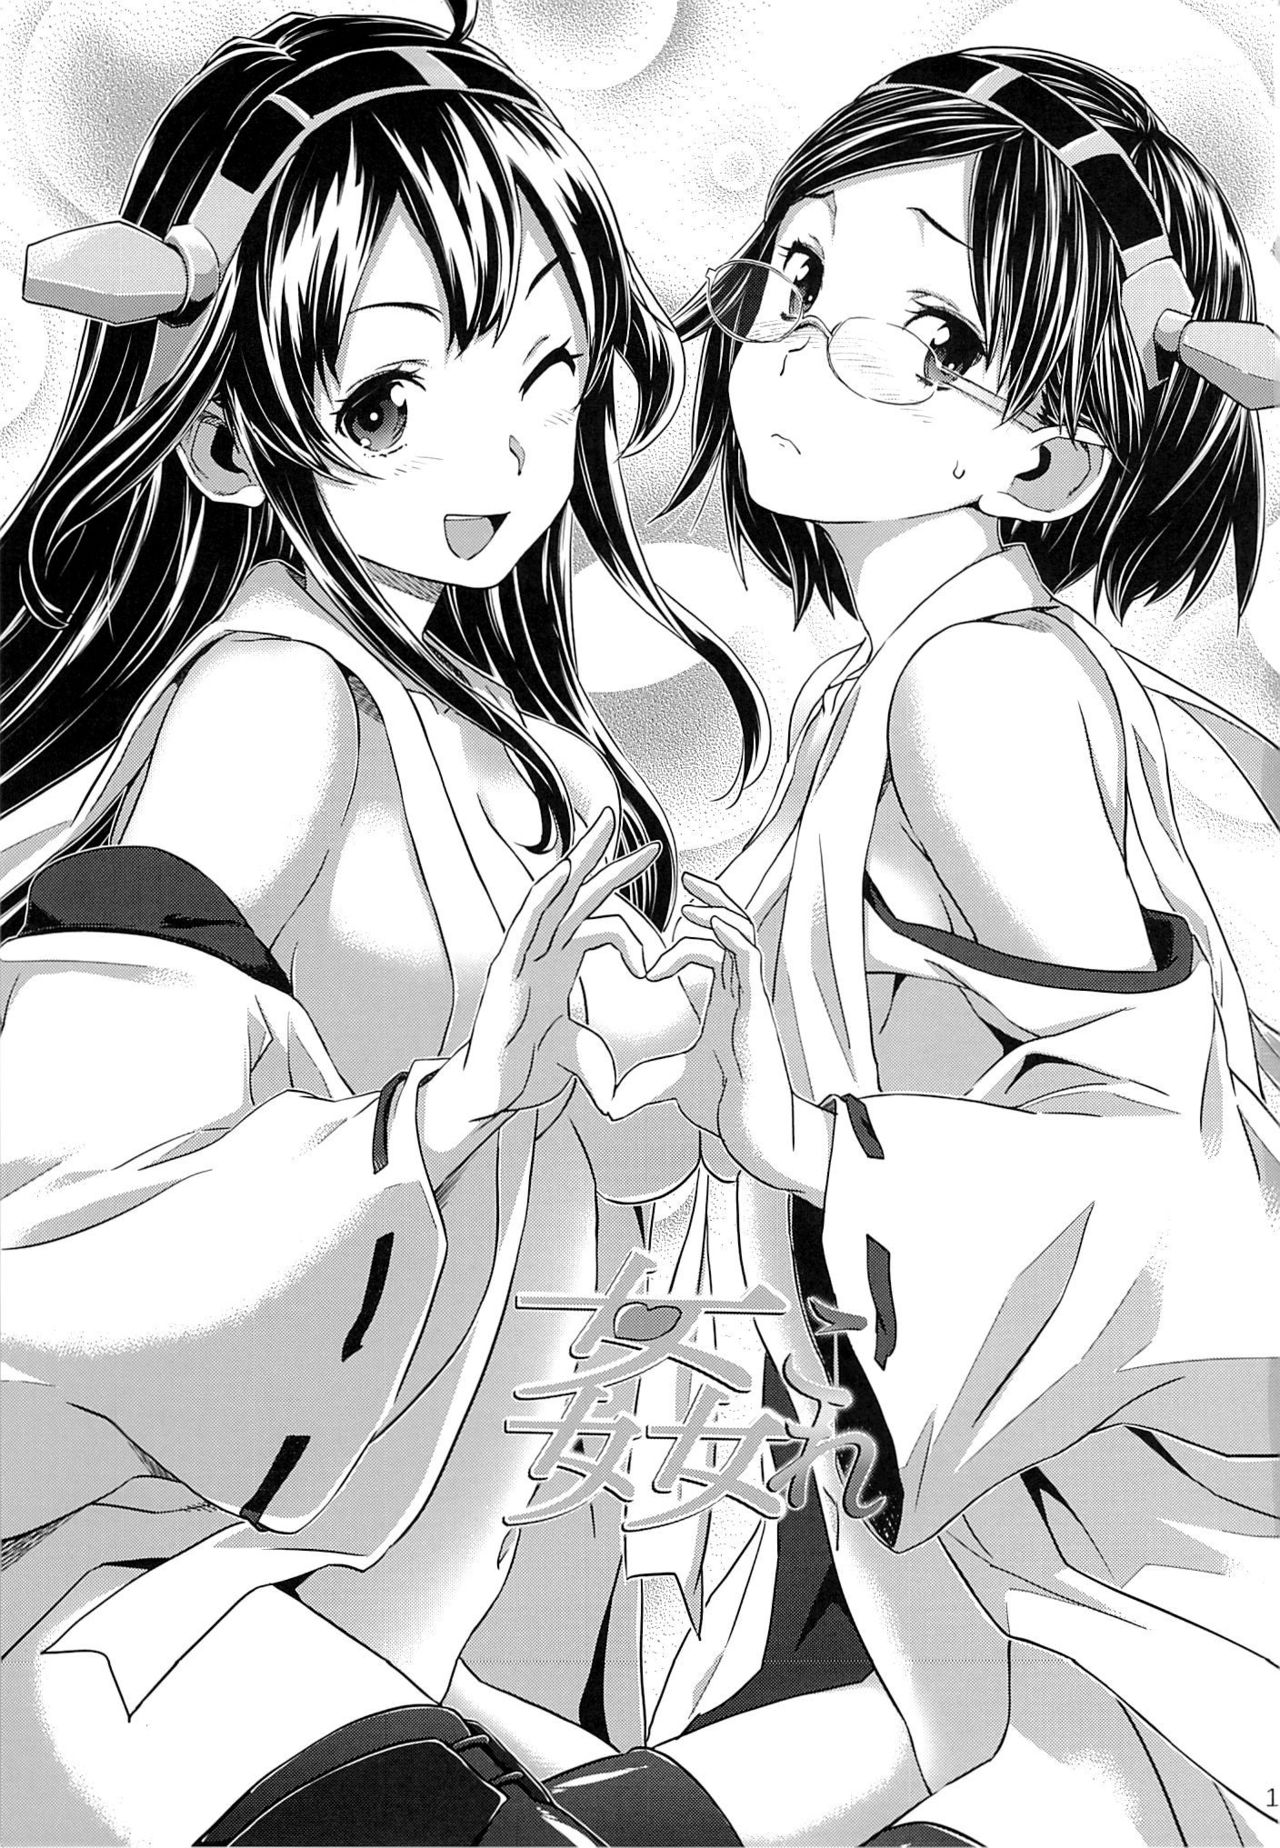 (C85) [SNOB NERD WORKS (Sameda Koban)] KanColle ~Teitoku ga KanMusu wo Seiteki na Me de Shika Mitekurenakute Tsurai~ | The Admiral Only Ever Looks at the Warship Girls with Lustful Eyes (Kantai Collection) [English] {doujin-moe.us} (C85) [SNOB NERD WORKS (さめだ小判)] 姦これ ~提督が艦娘を性的な目でしか見てくれなくてつらい~ (艦隊これくしょん -艦これ-) [英訳]